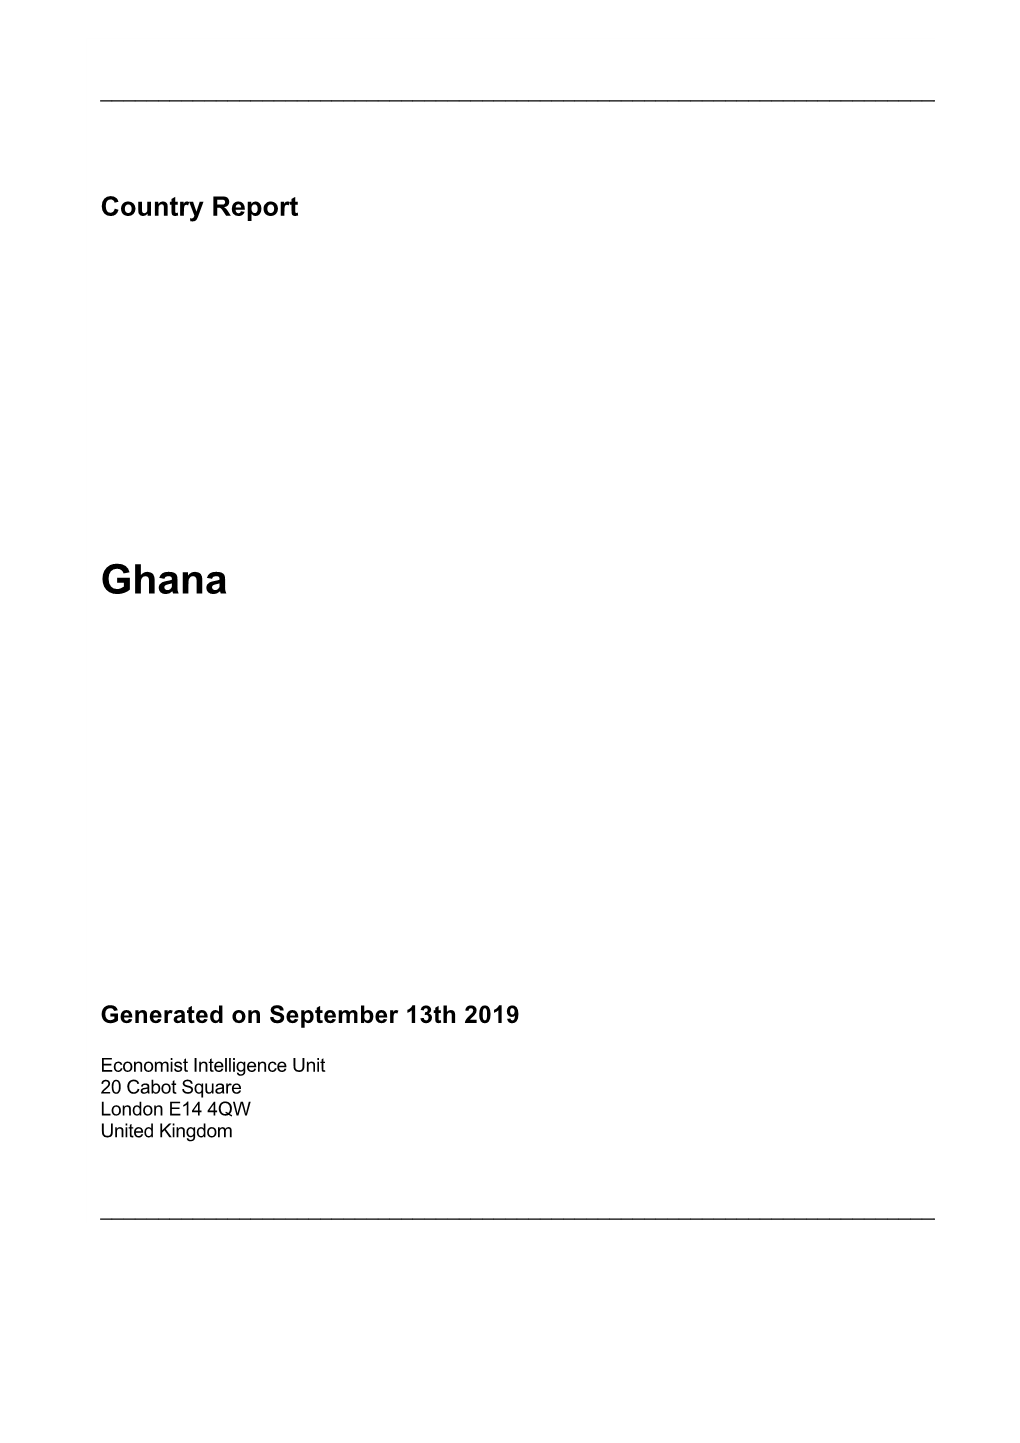 Country Report Ghana September 2019